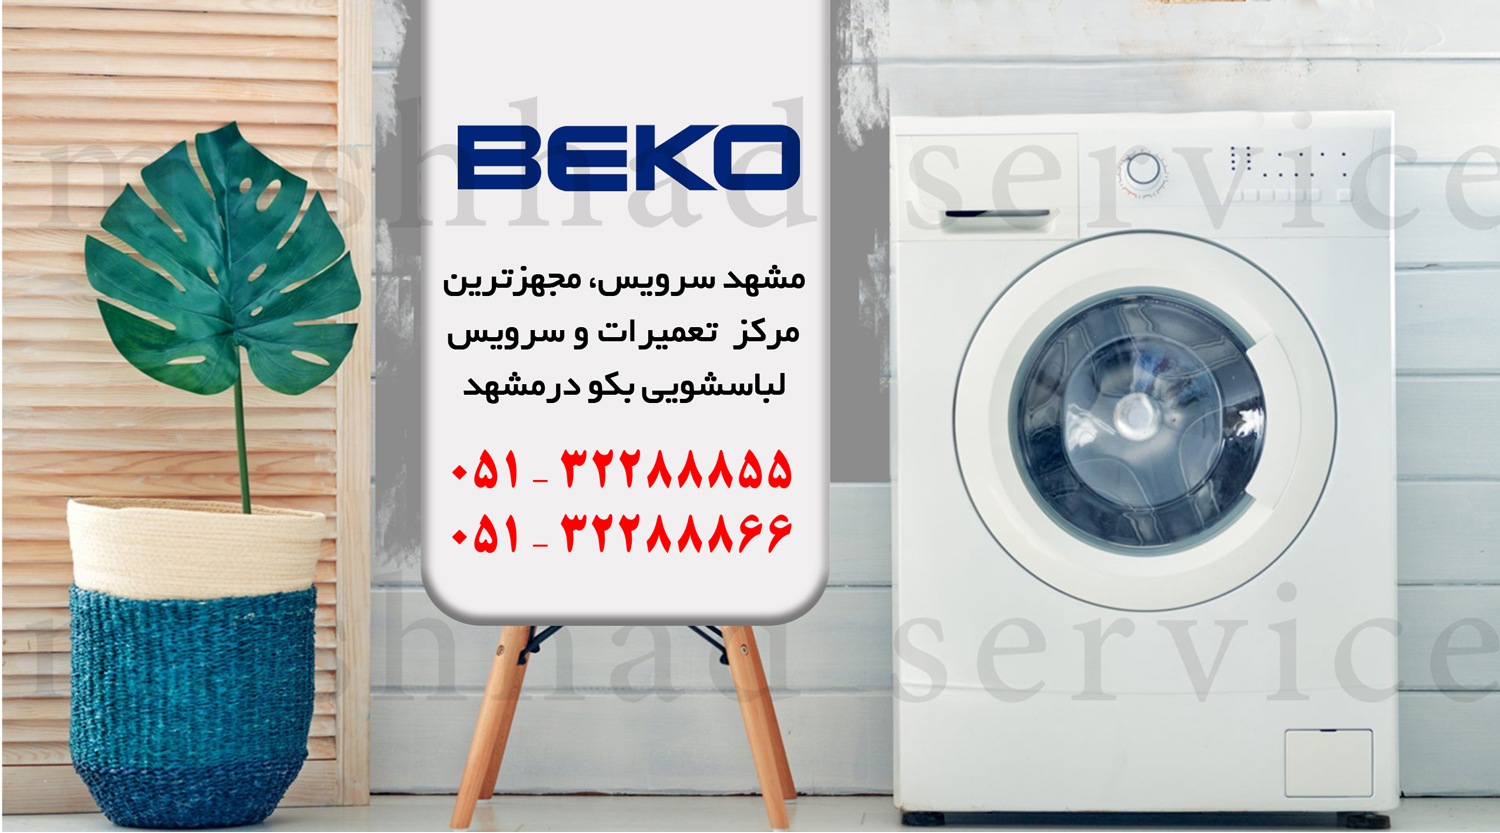 تعمیر ماشین لباسشویی بکو در مشهد